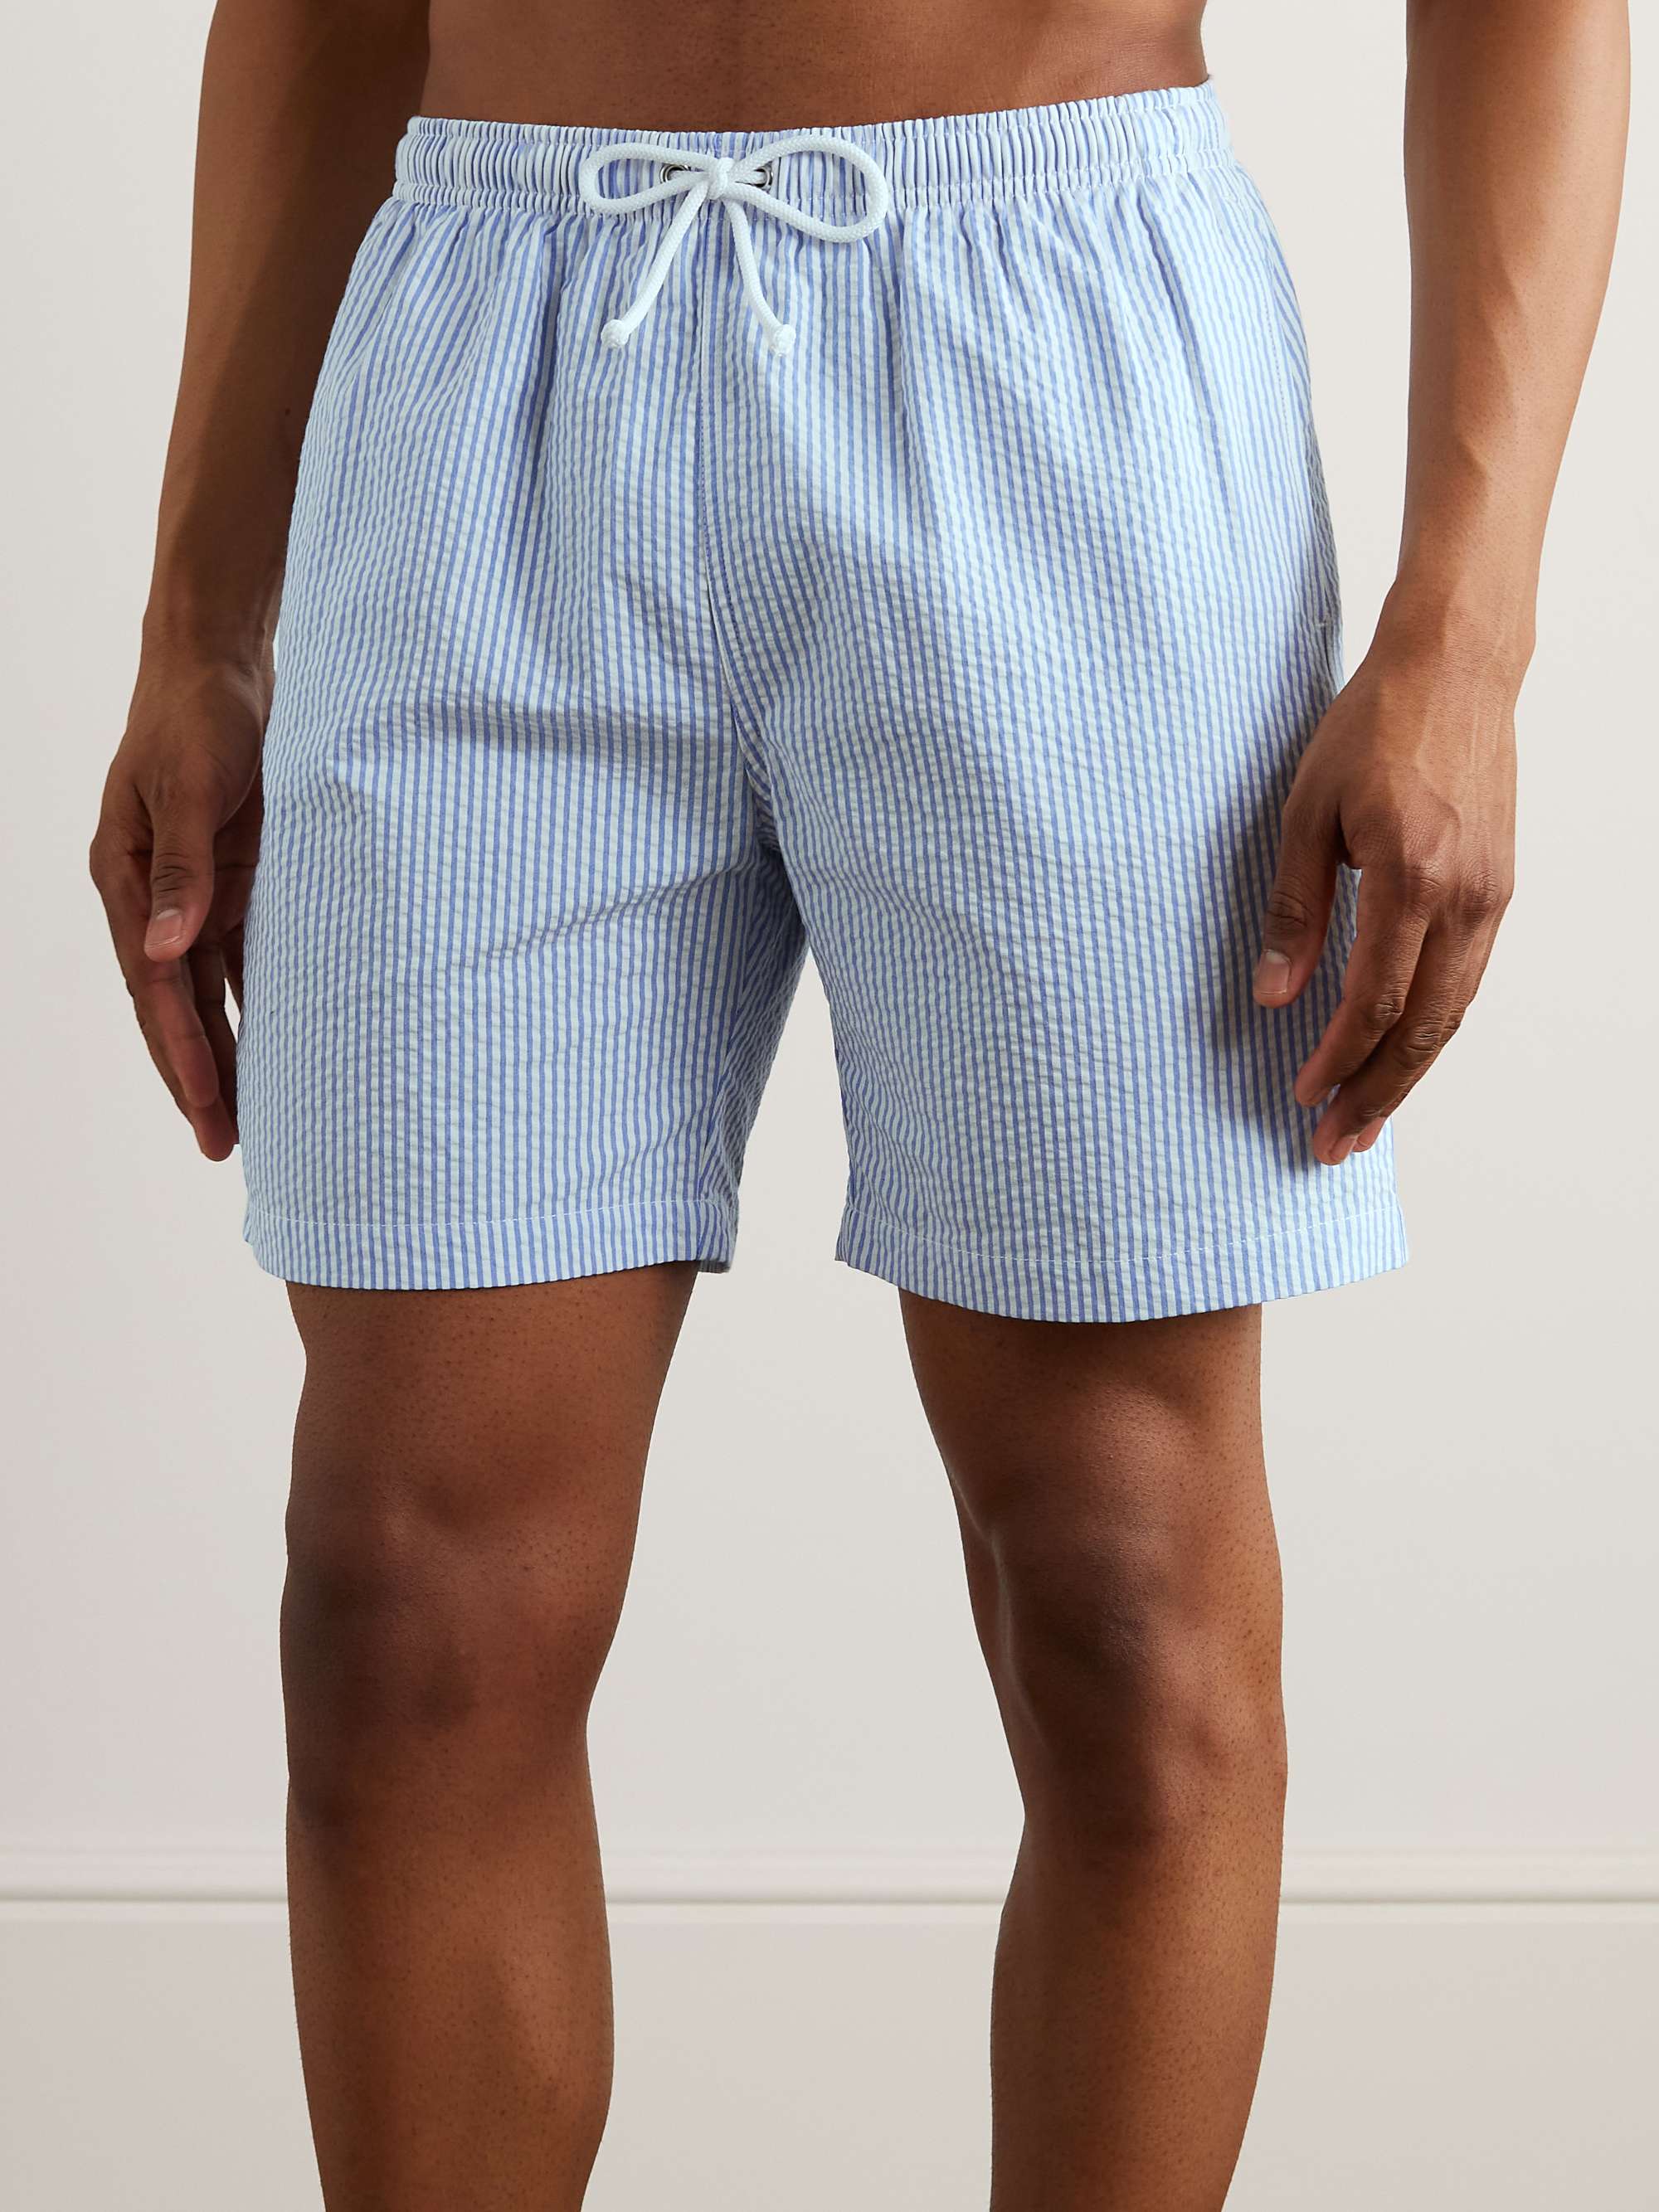 ANDERSON & SHEPPARD Straight-Leg Mid-Length Striped Seersucker Swim Shorts  for Men | MR PORTER